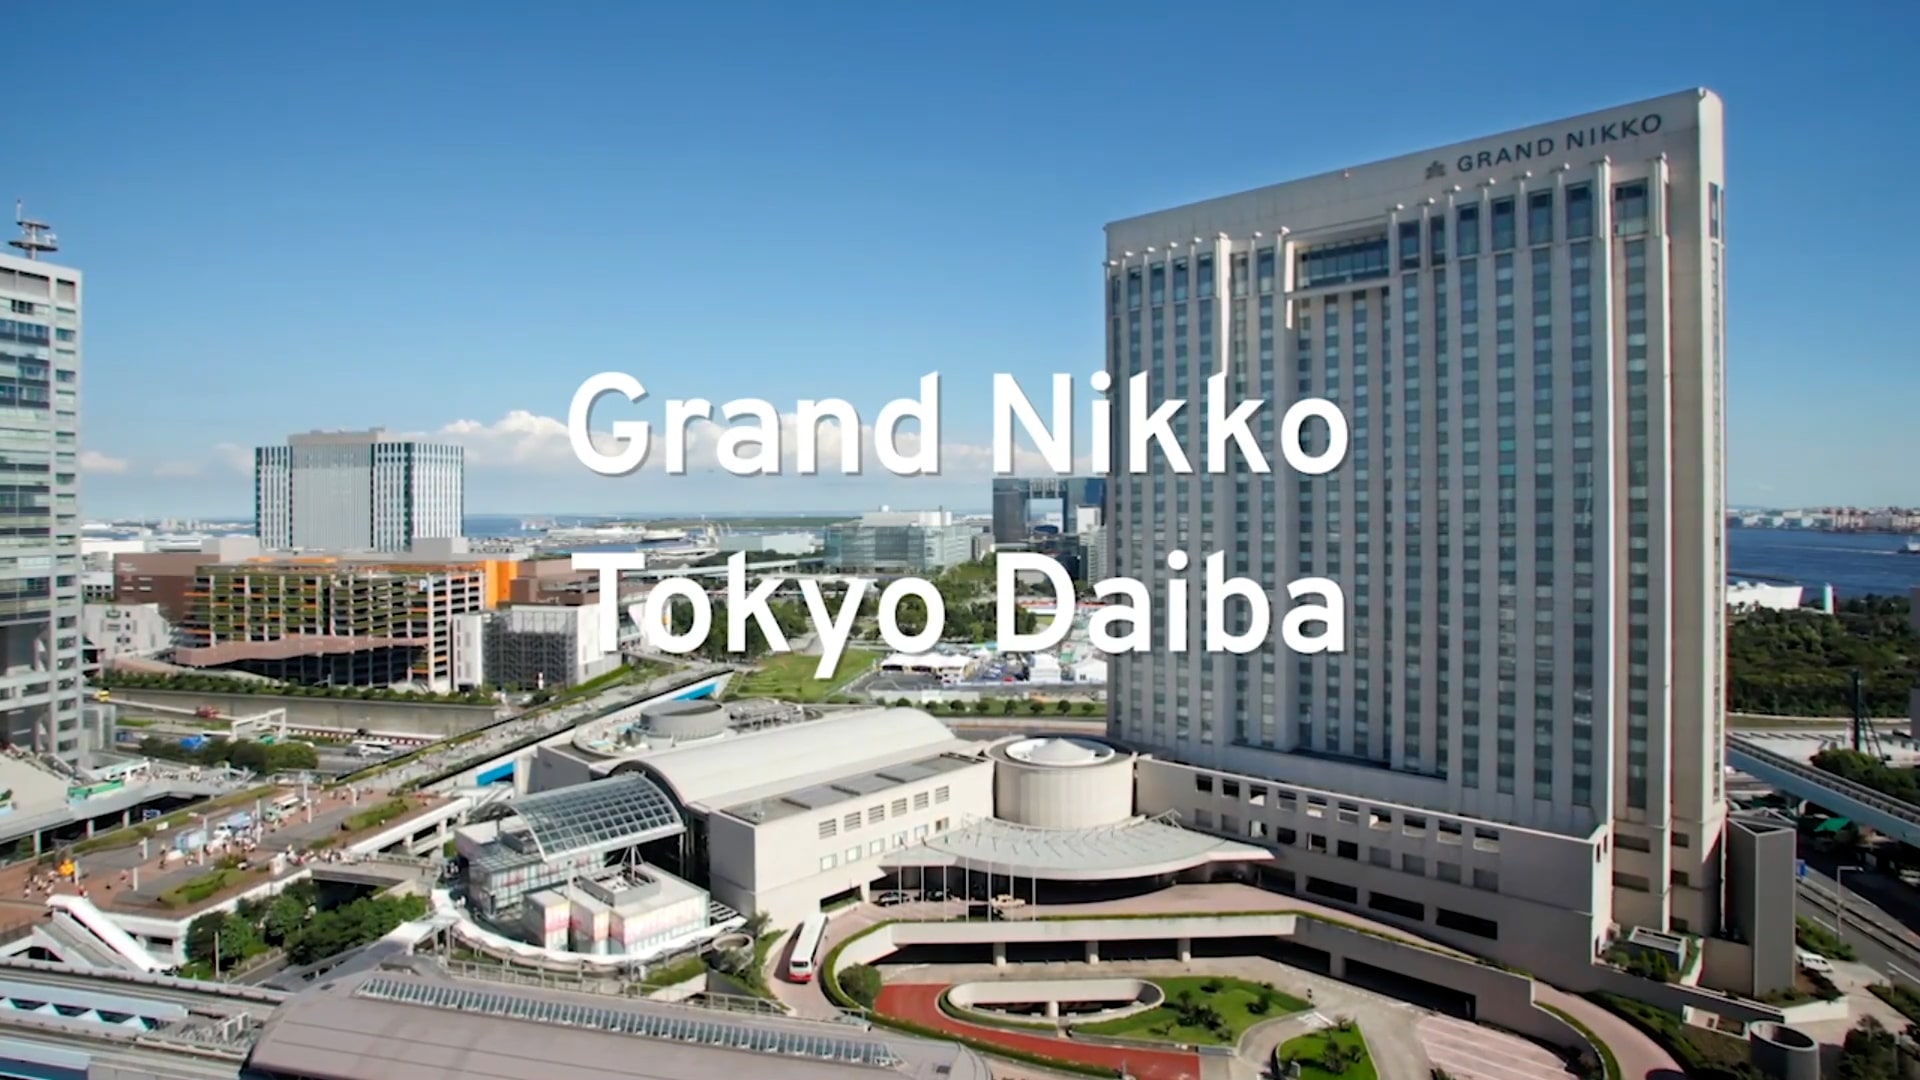 Grand Nikko Tokyo Daiba